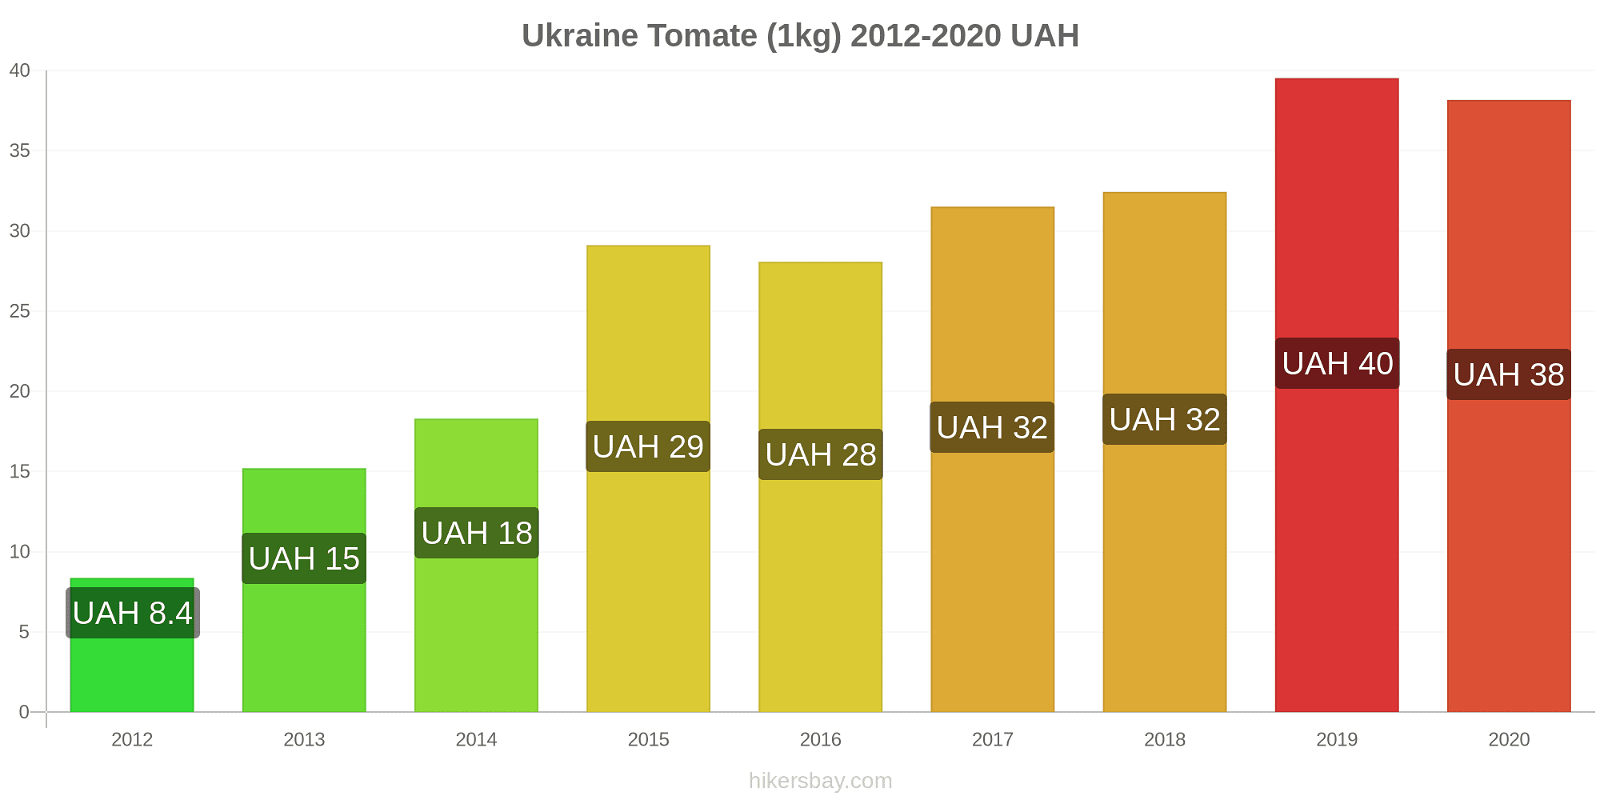 Ukraine changements de prix Tomate (1kg) hikersbay.com